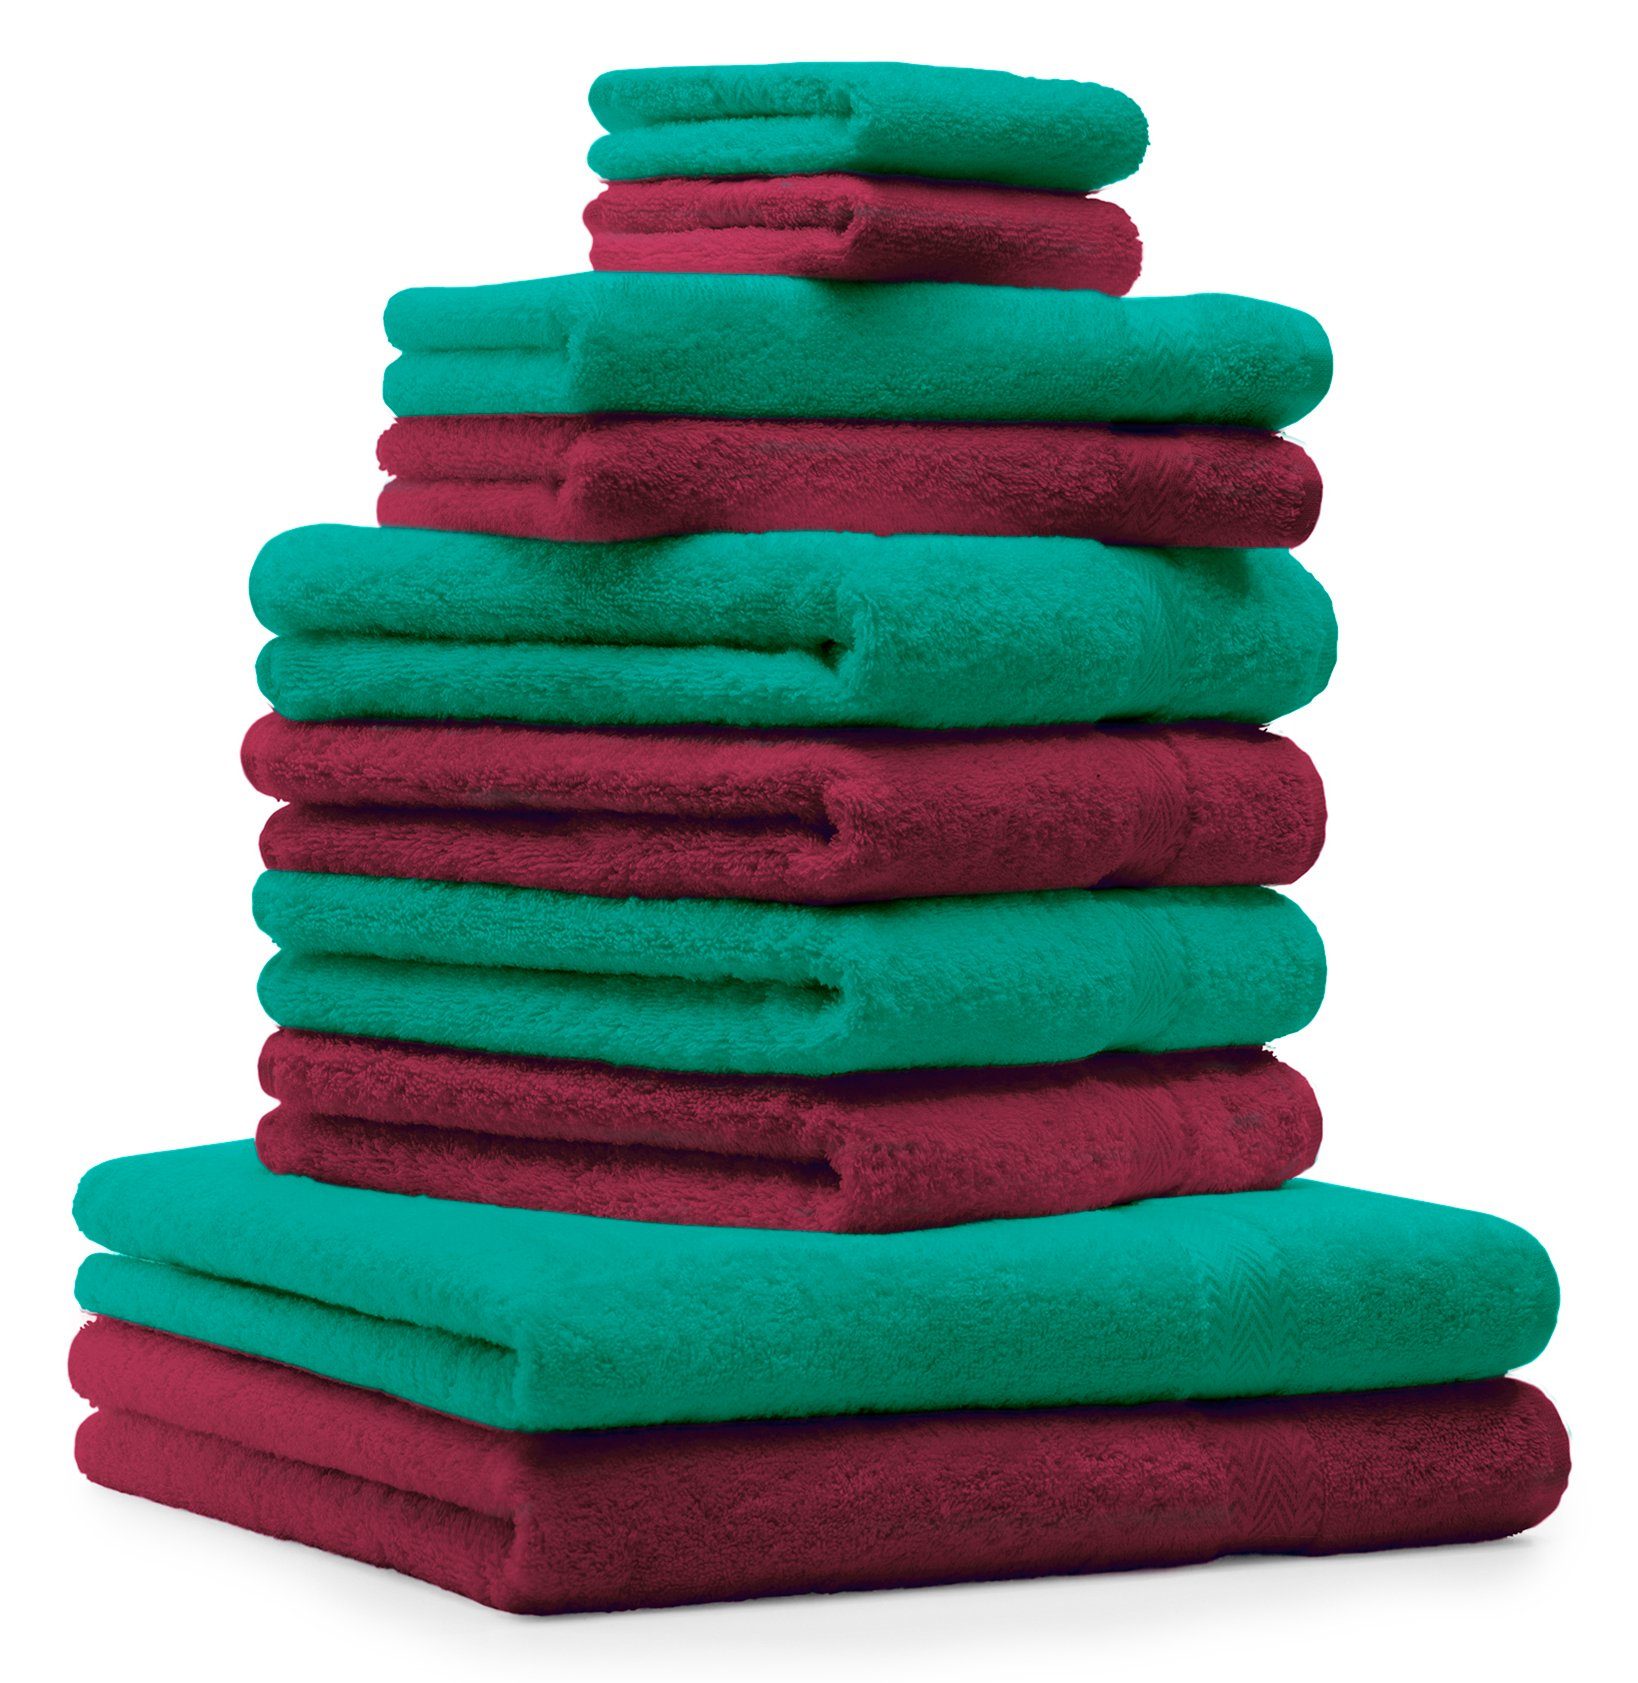 Betz Handtuch Set 10-TLG. Handtuch-Set Classic 100% Baumwolle dunkelrot & smaragdgrün, 100% Baumwolle